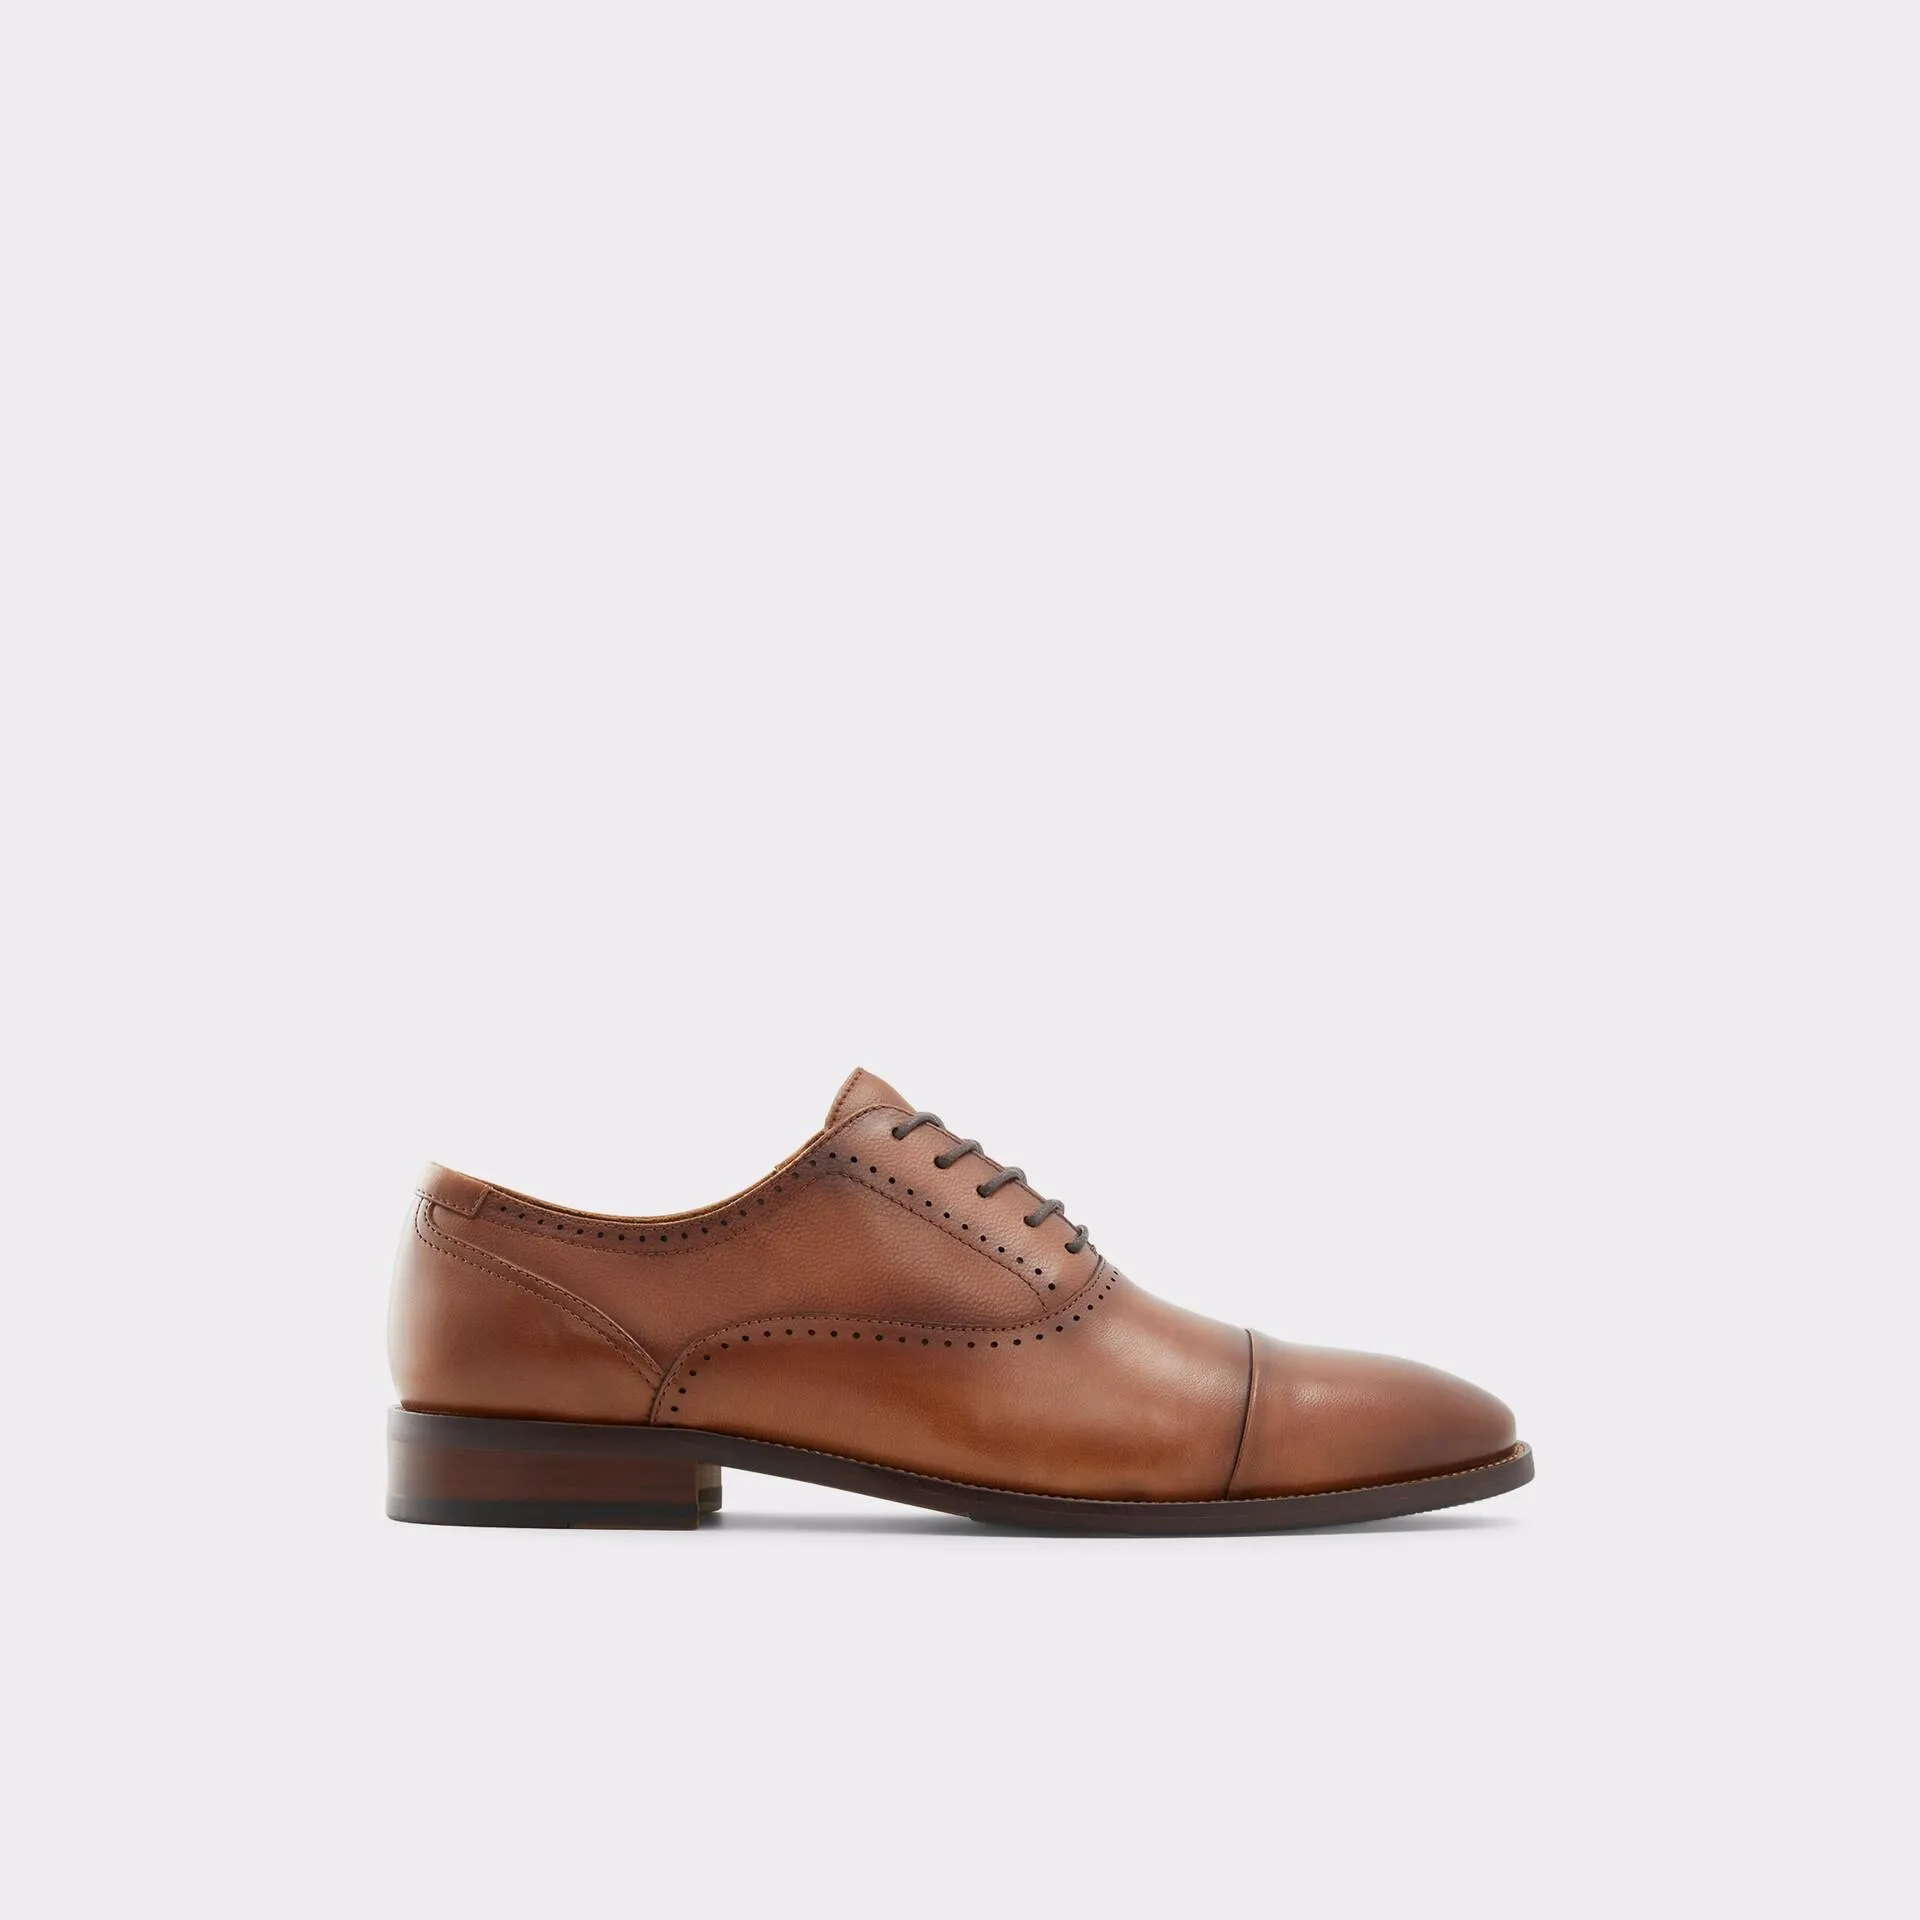 Sapatos clássicos em pele cognac - ABAWIENFLEX